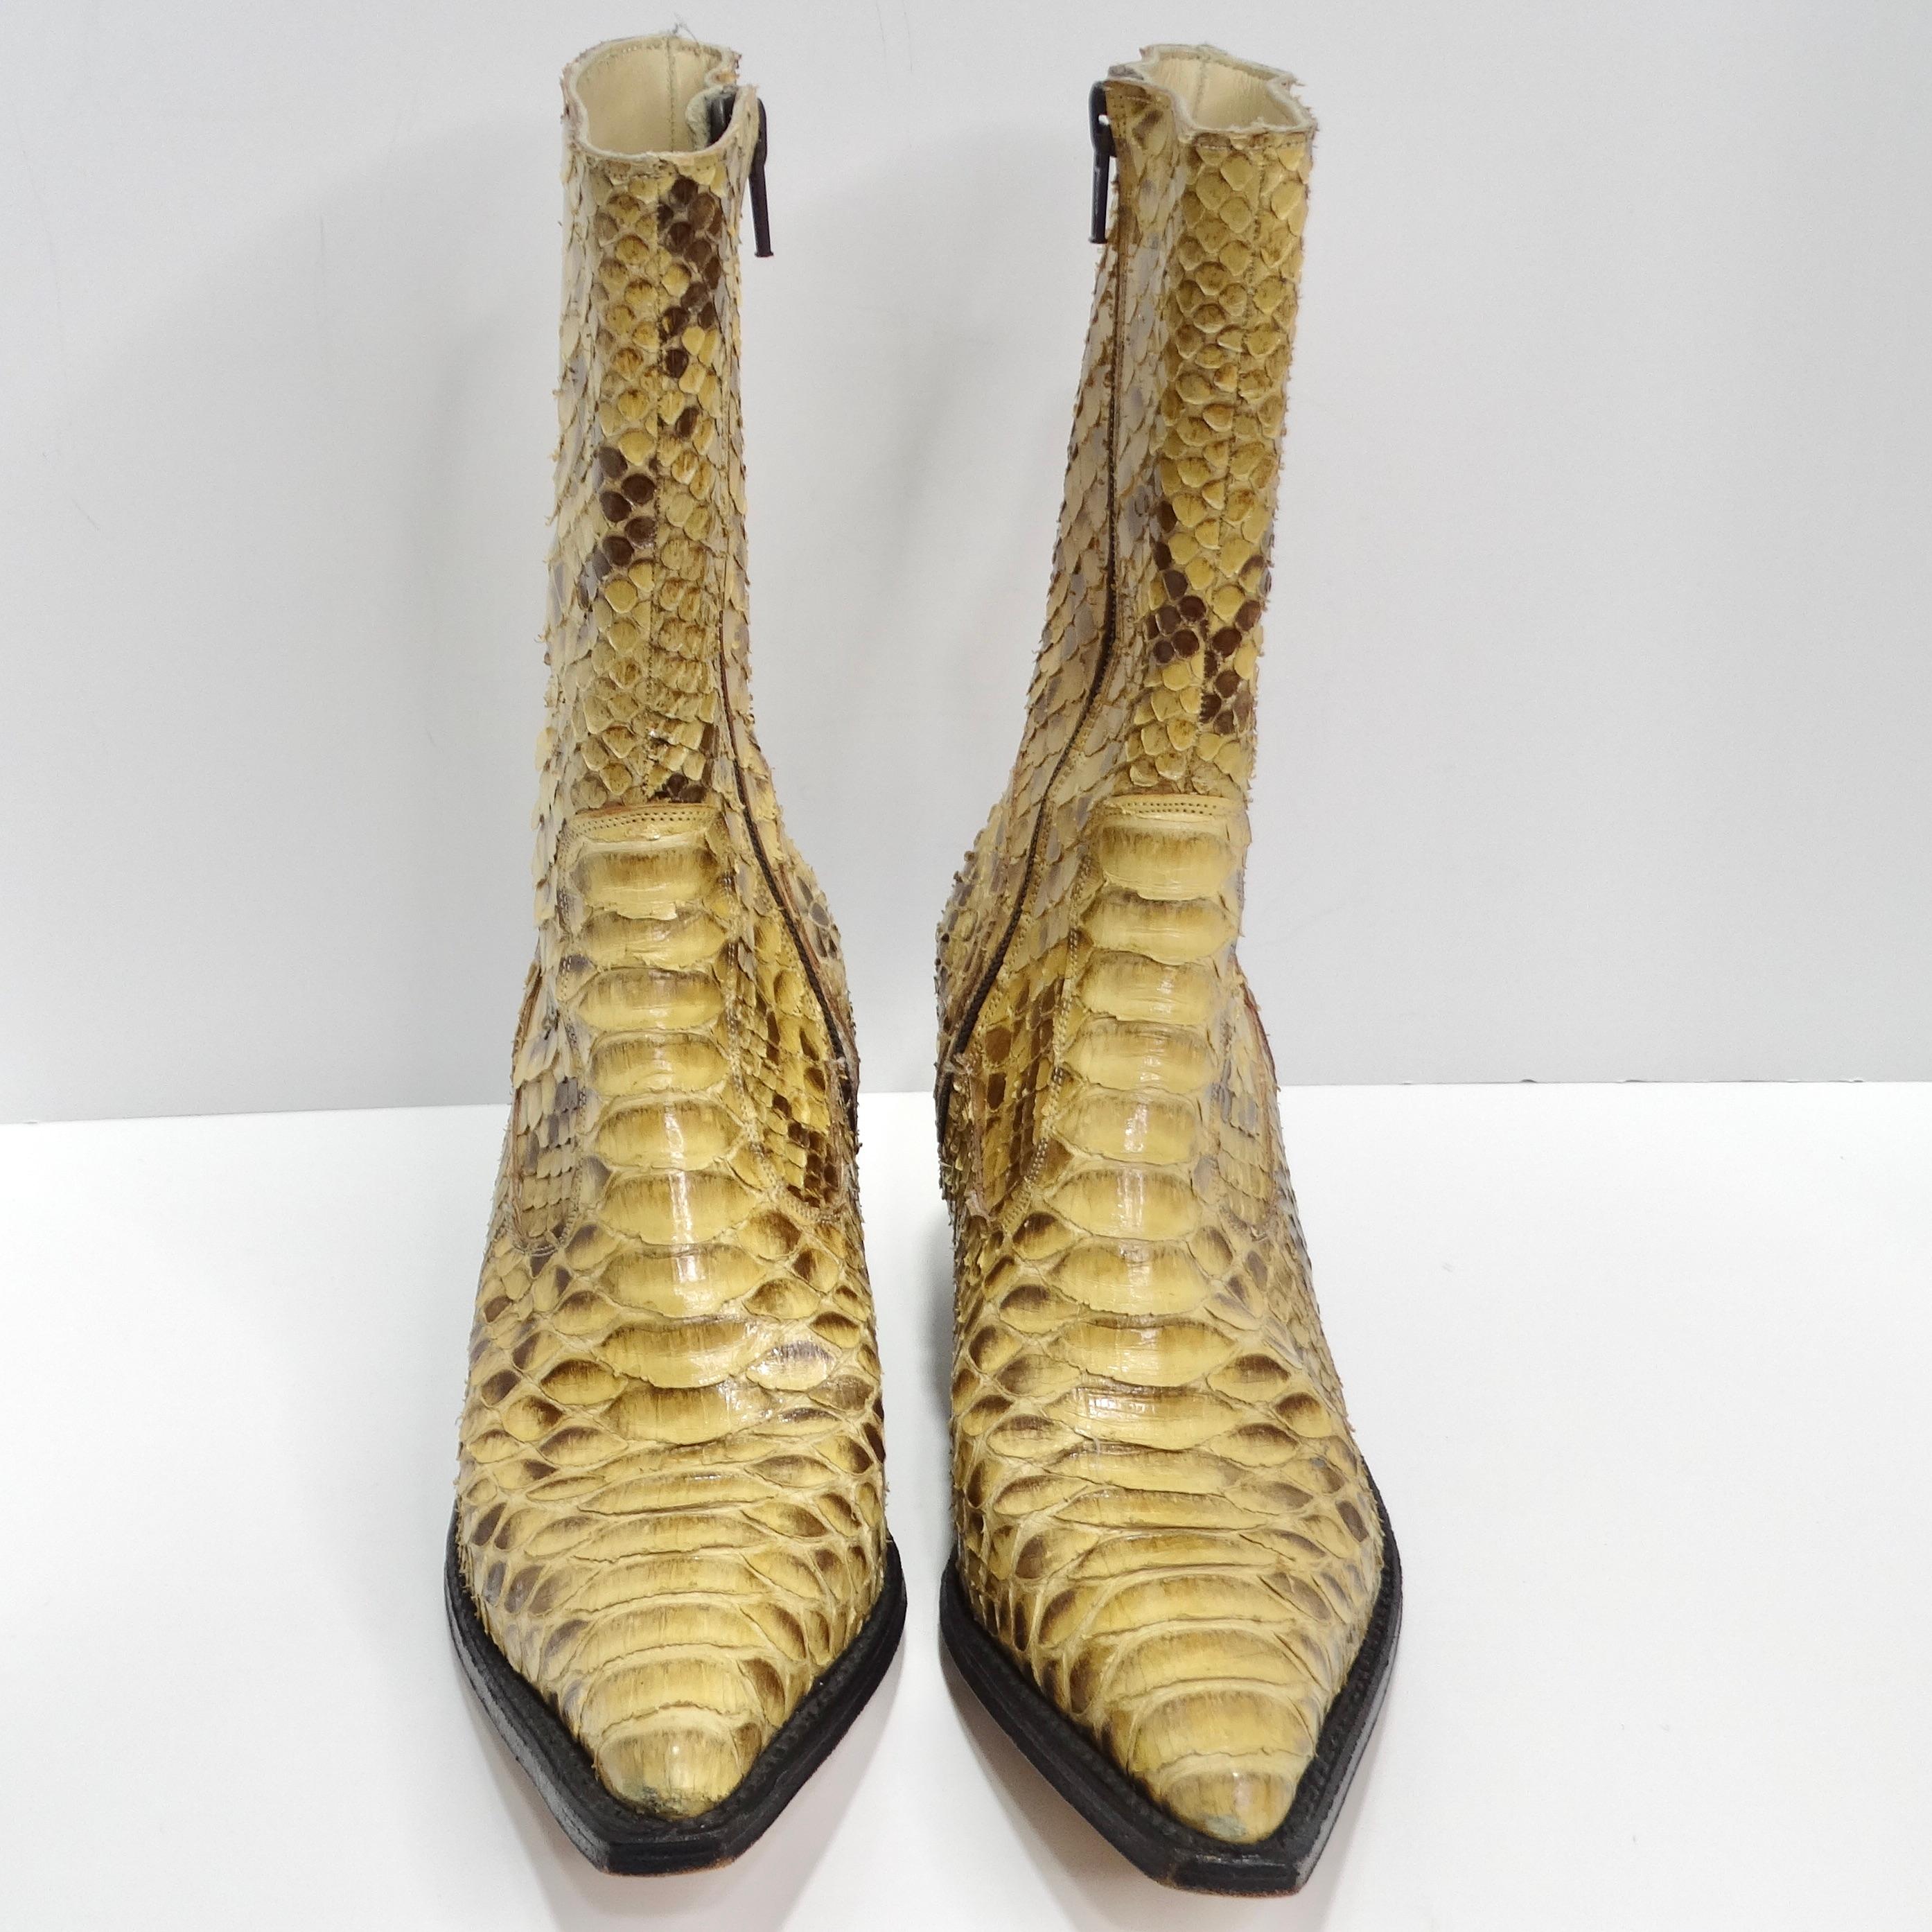 Entrez dans l'incarnation du luxe avec les bottes de cow-boy Tony Mora Python. Ces extraordinaires bottes de cow-boy sont fabriquées en cuir de python véritable marron et beige, exhalant opulence et sophistication à chaque pas. La combinaison unique